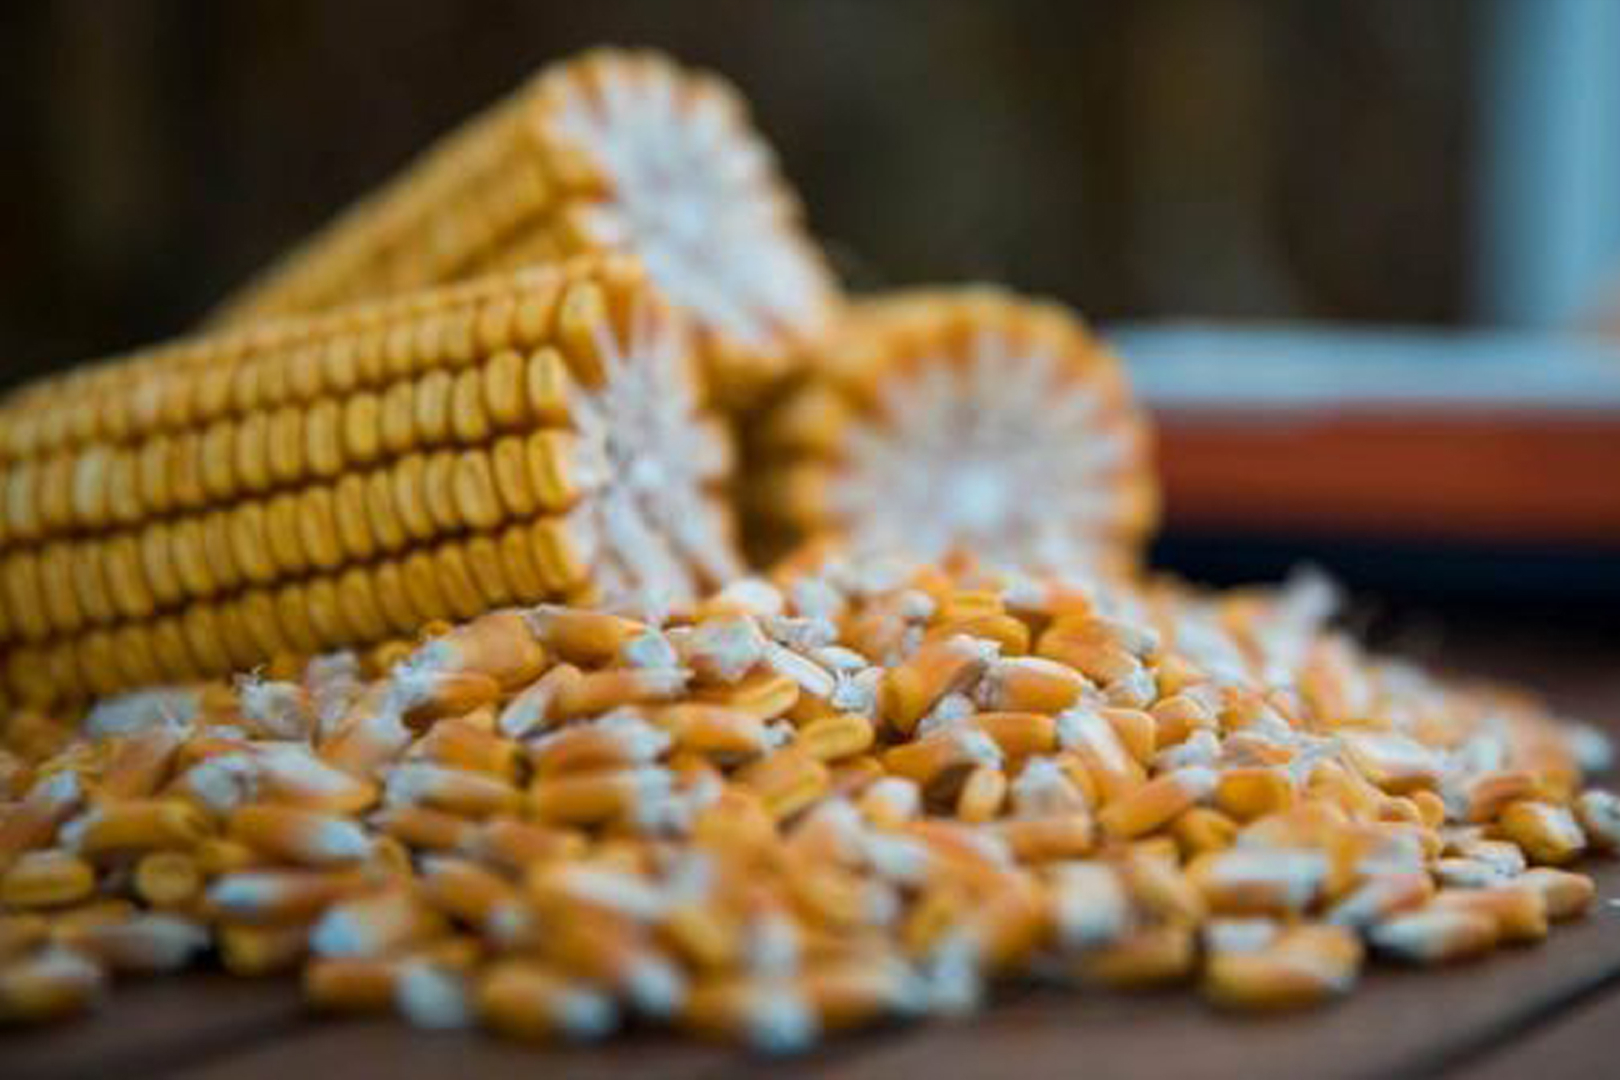 国际玉米供应减少，国内多方主体入市收购，玉米价格继续上涨